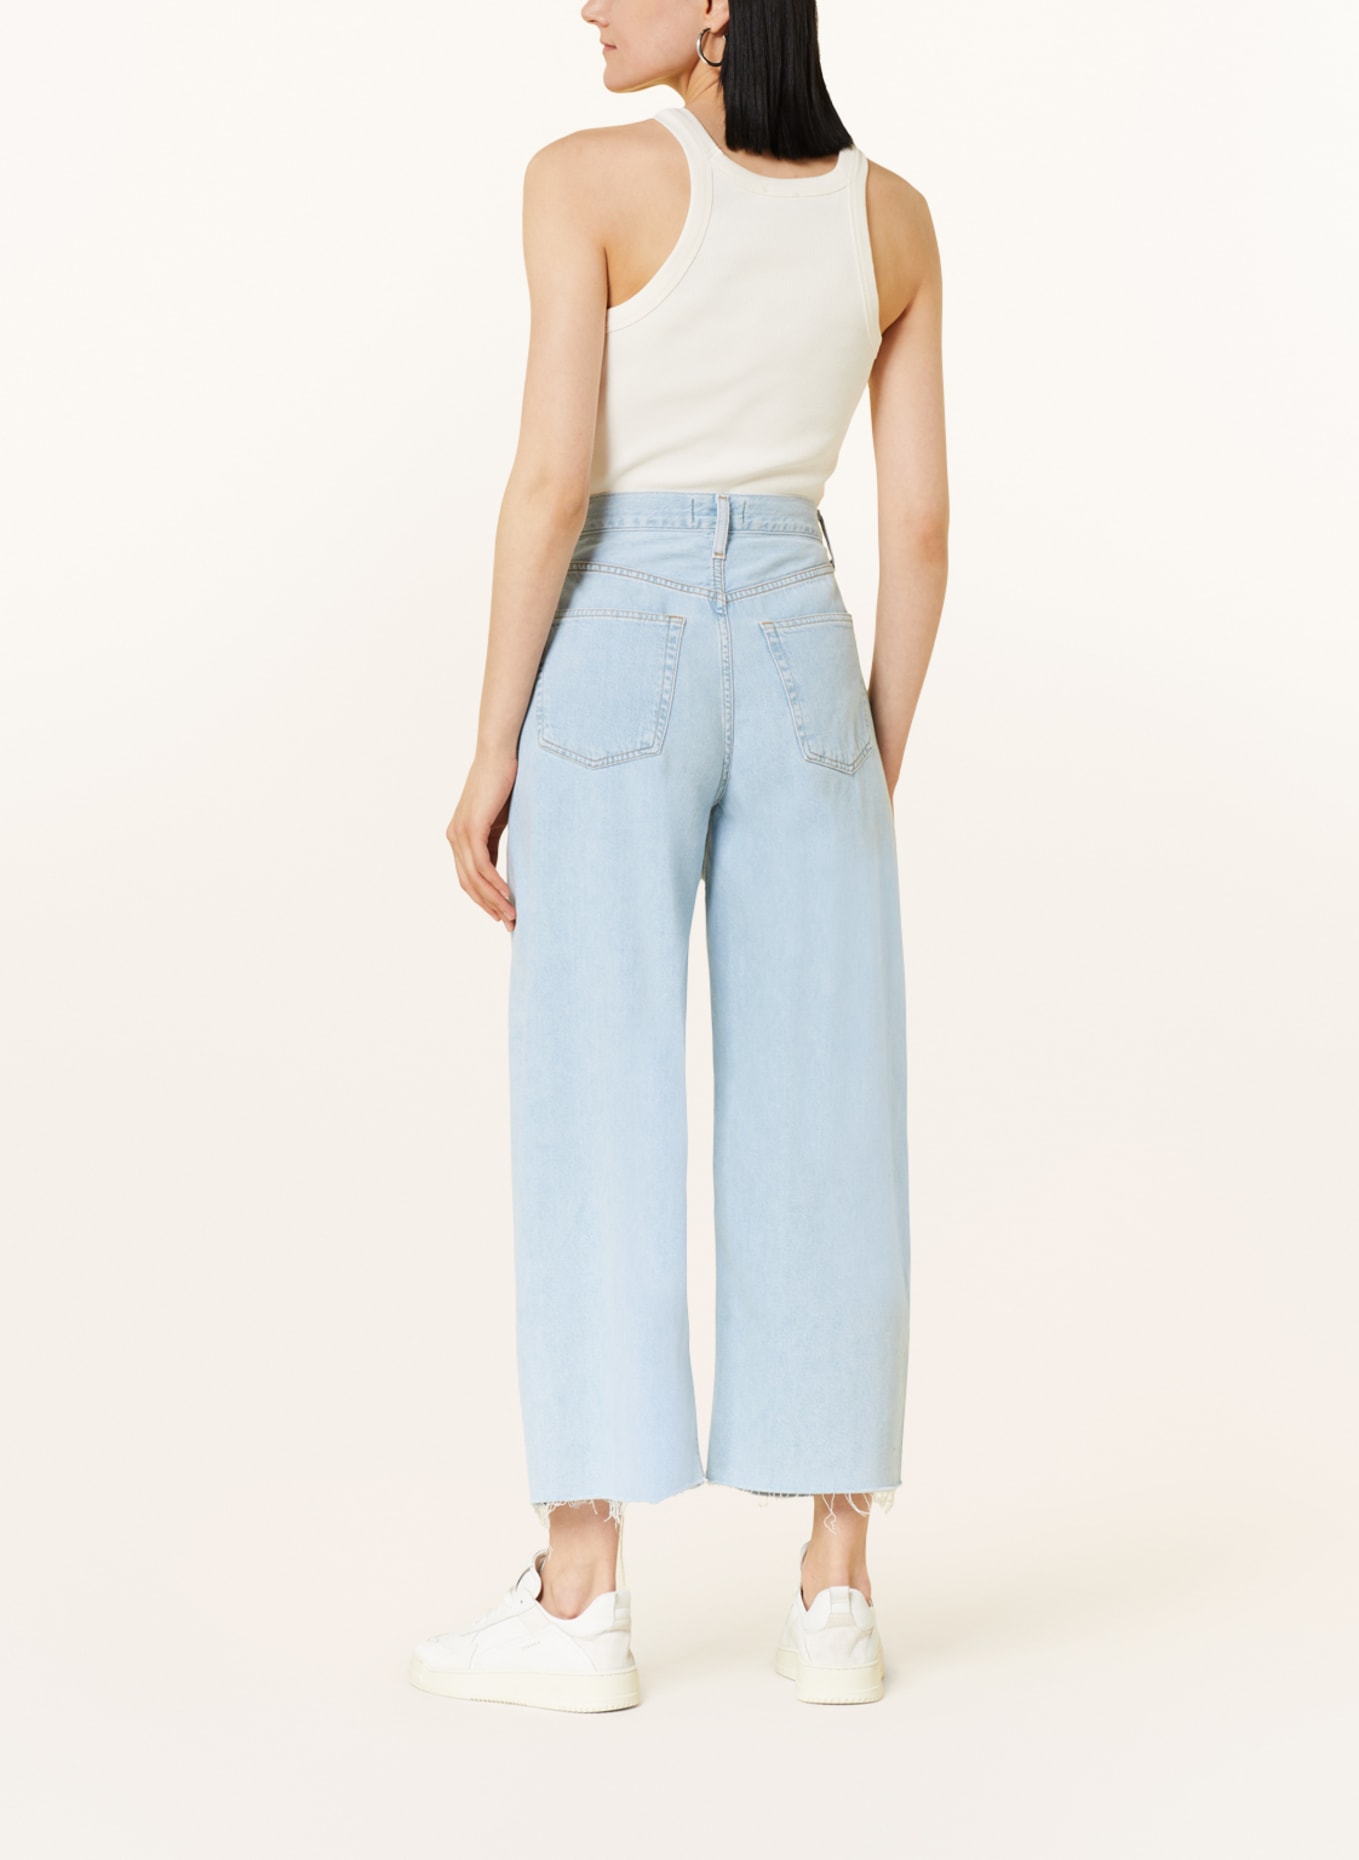 AGOLDE Culotte jeans DAGNA, Color: Pivot med washed ind (Image 3)